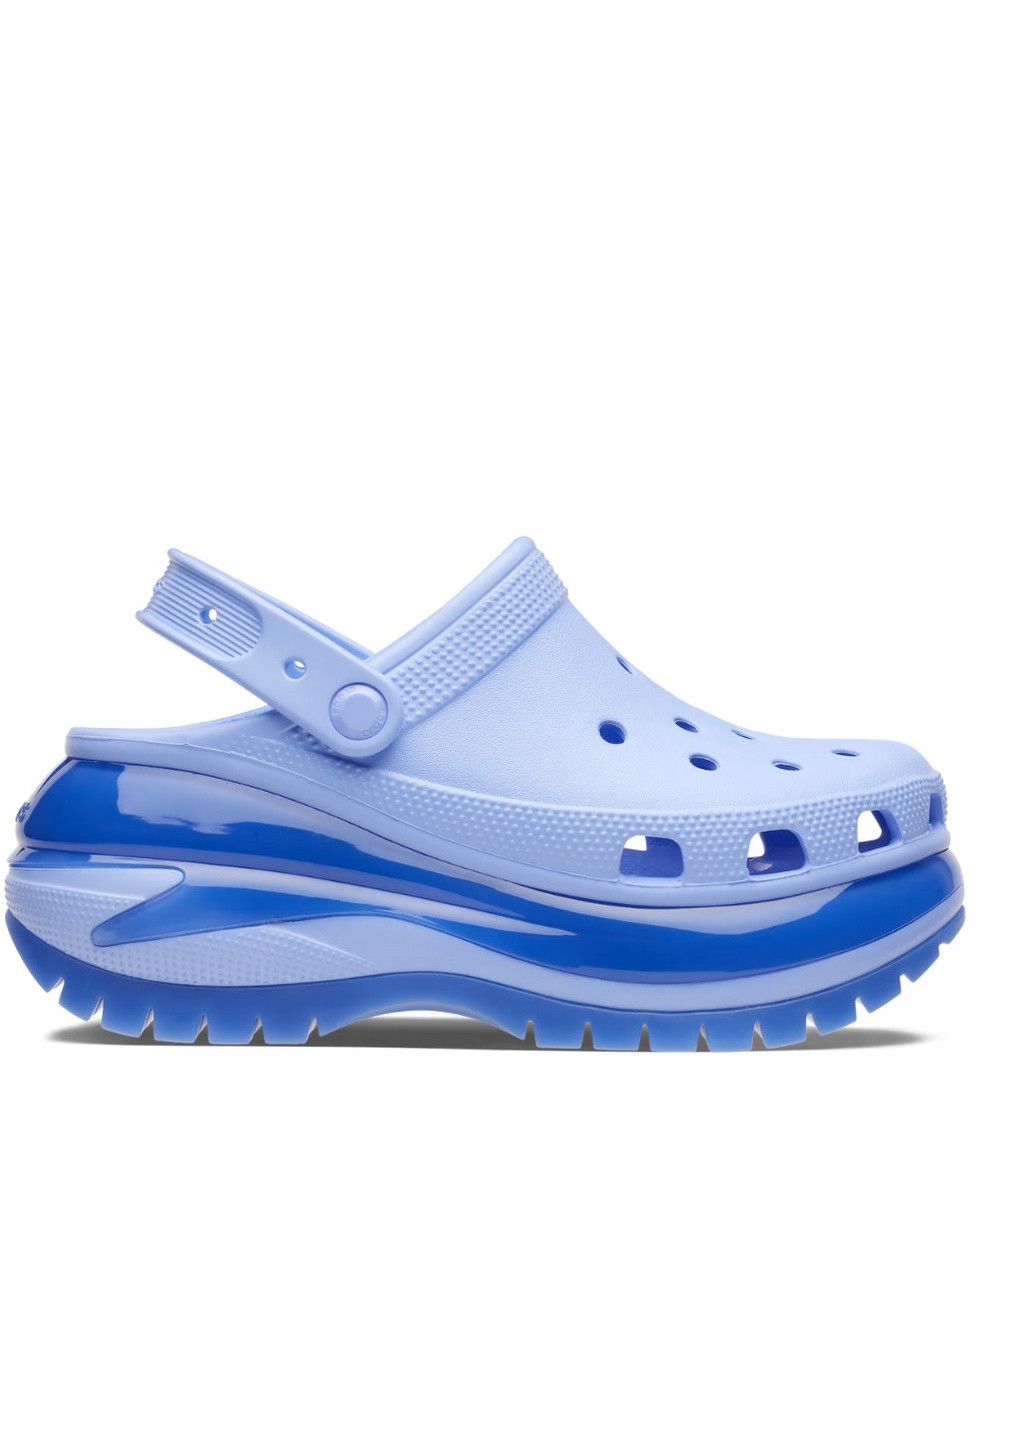 Голубые сабо на высокой платформе Crocs на высоком каблуке